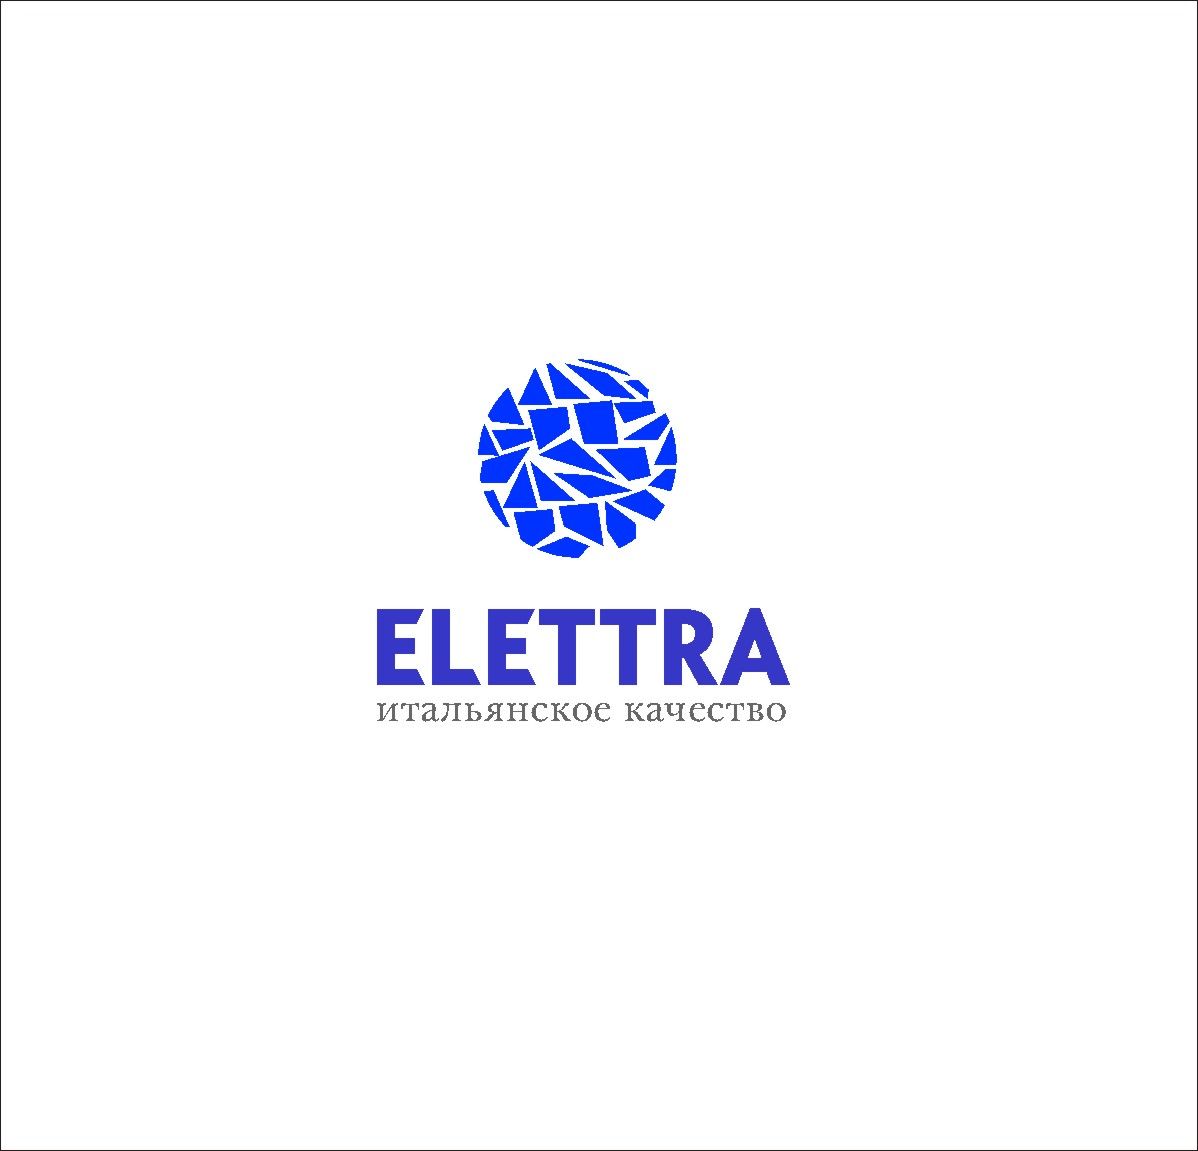 Логотип Elettra - стекольное производство - дизайнер radchuk-ruslan